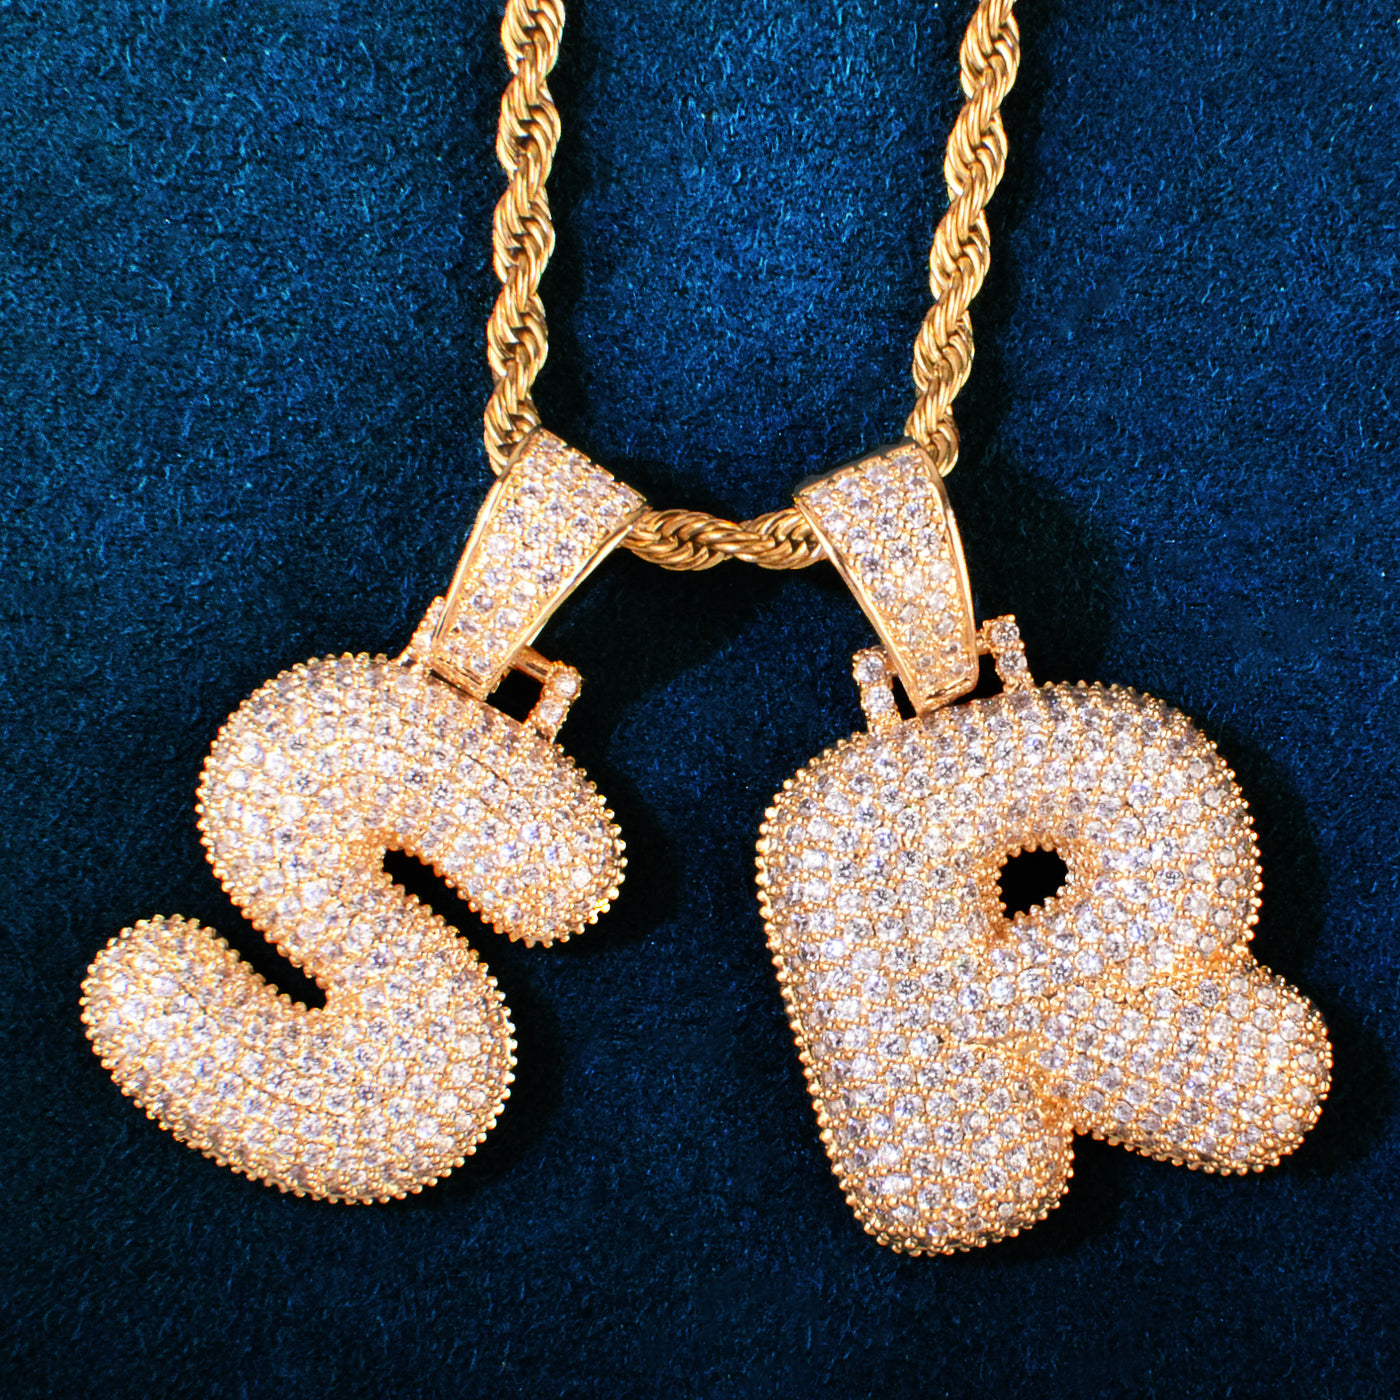 A-Z Single Bubble Letter Pendant Necklace